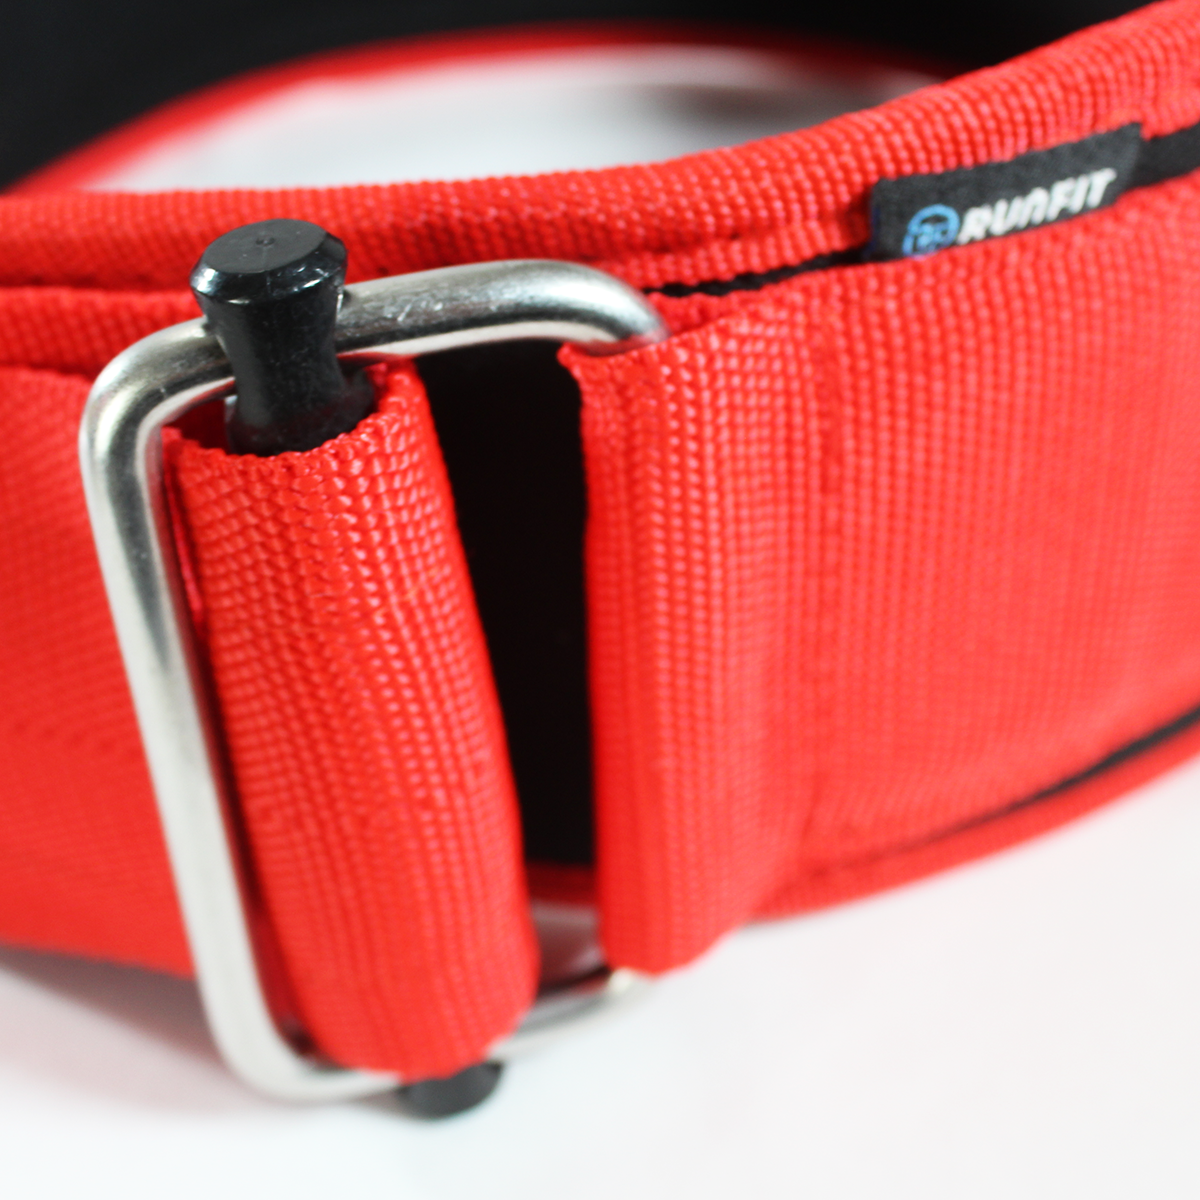 Cinturon Running Sportlast - Rojo